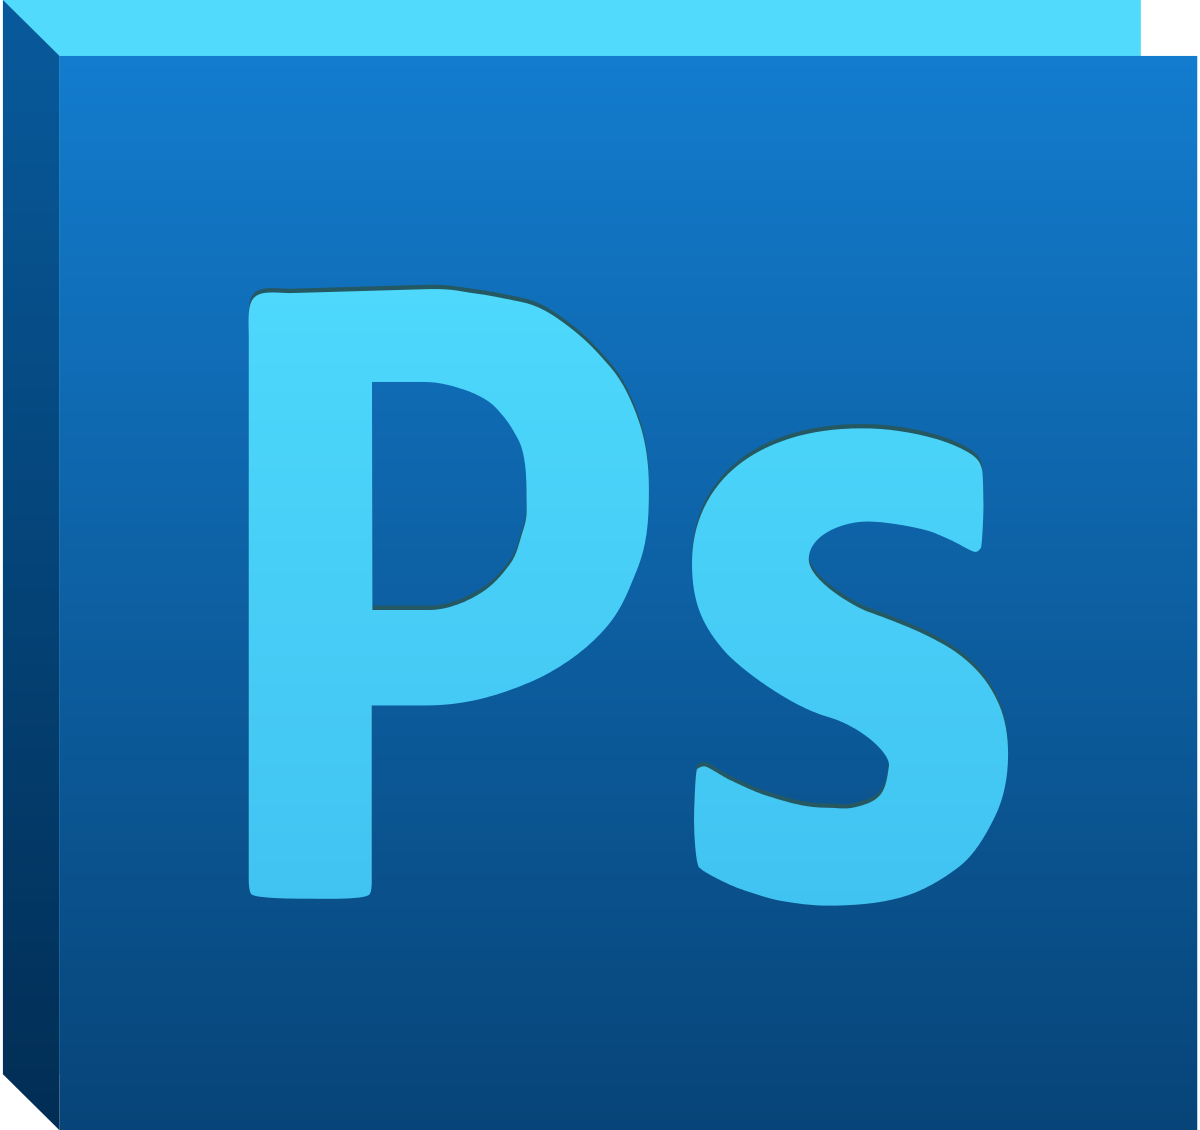 Adobe Photoshop CS5 | Adobe Wiki | Fandom